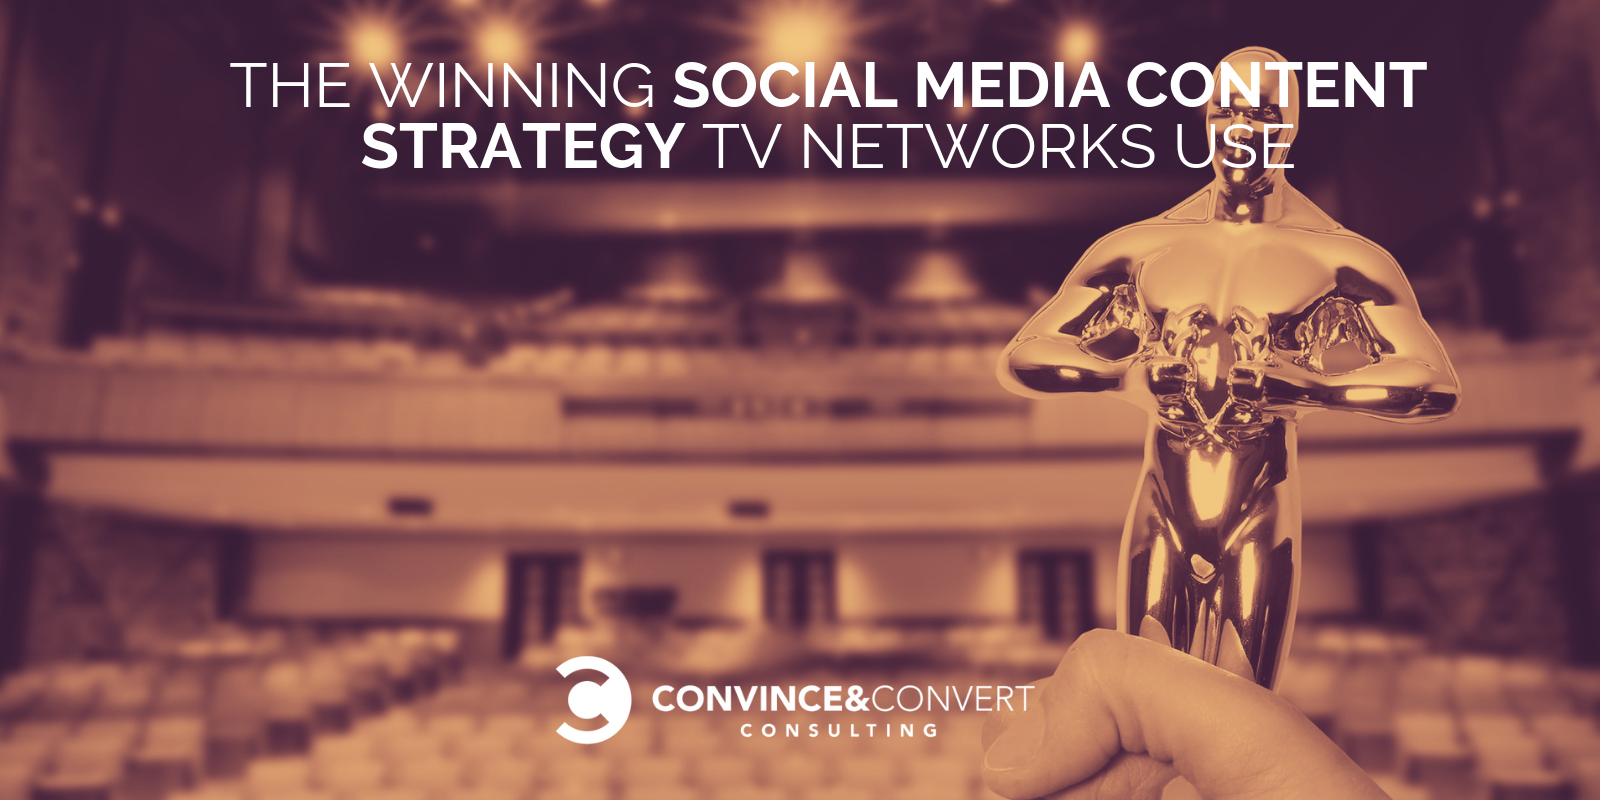 Strategia vincente per i contenuti sui social media